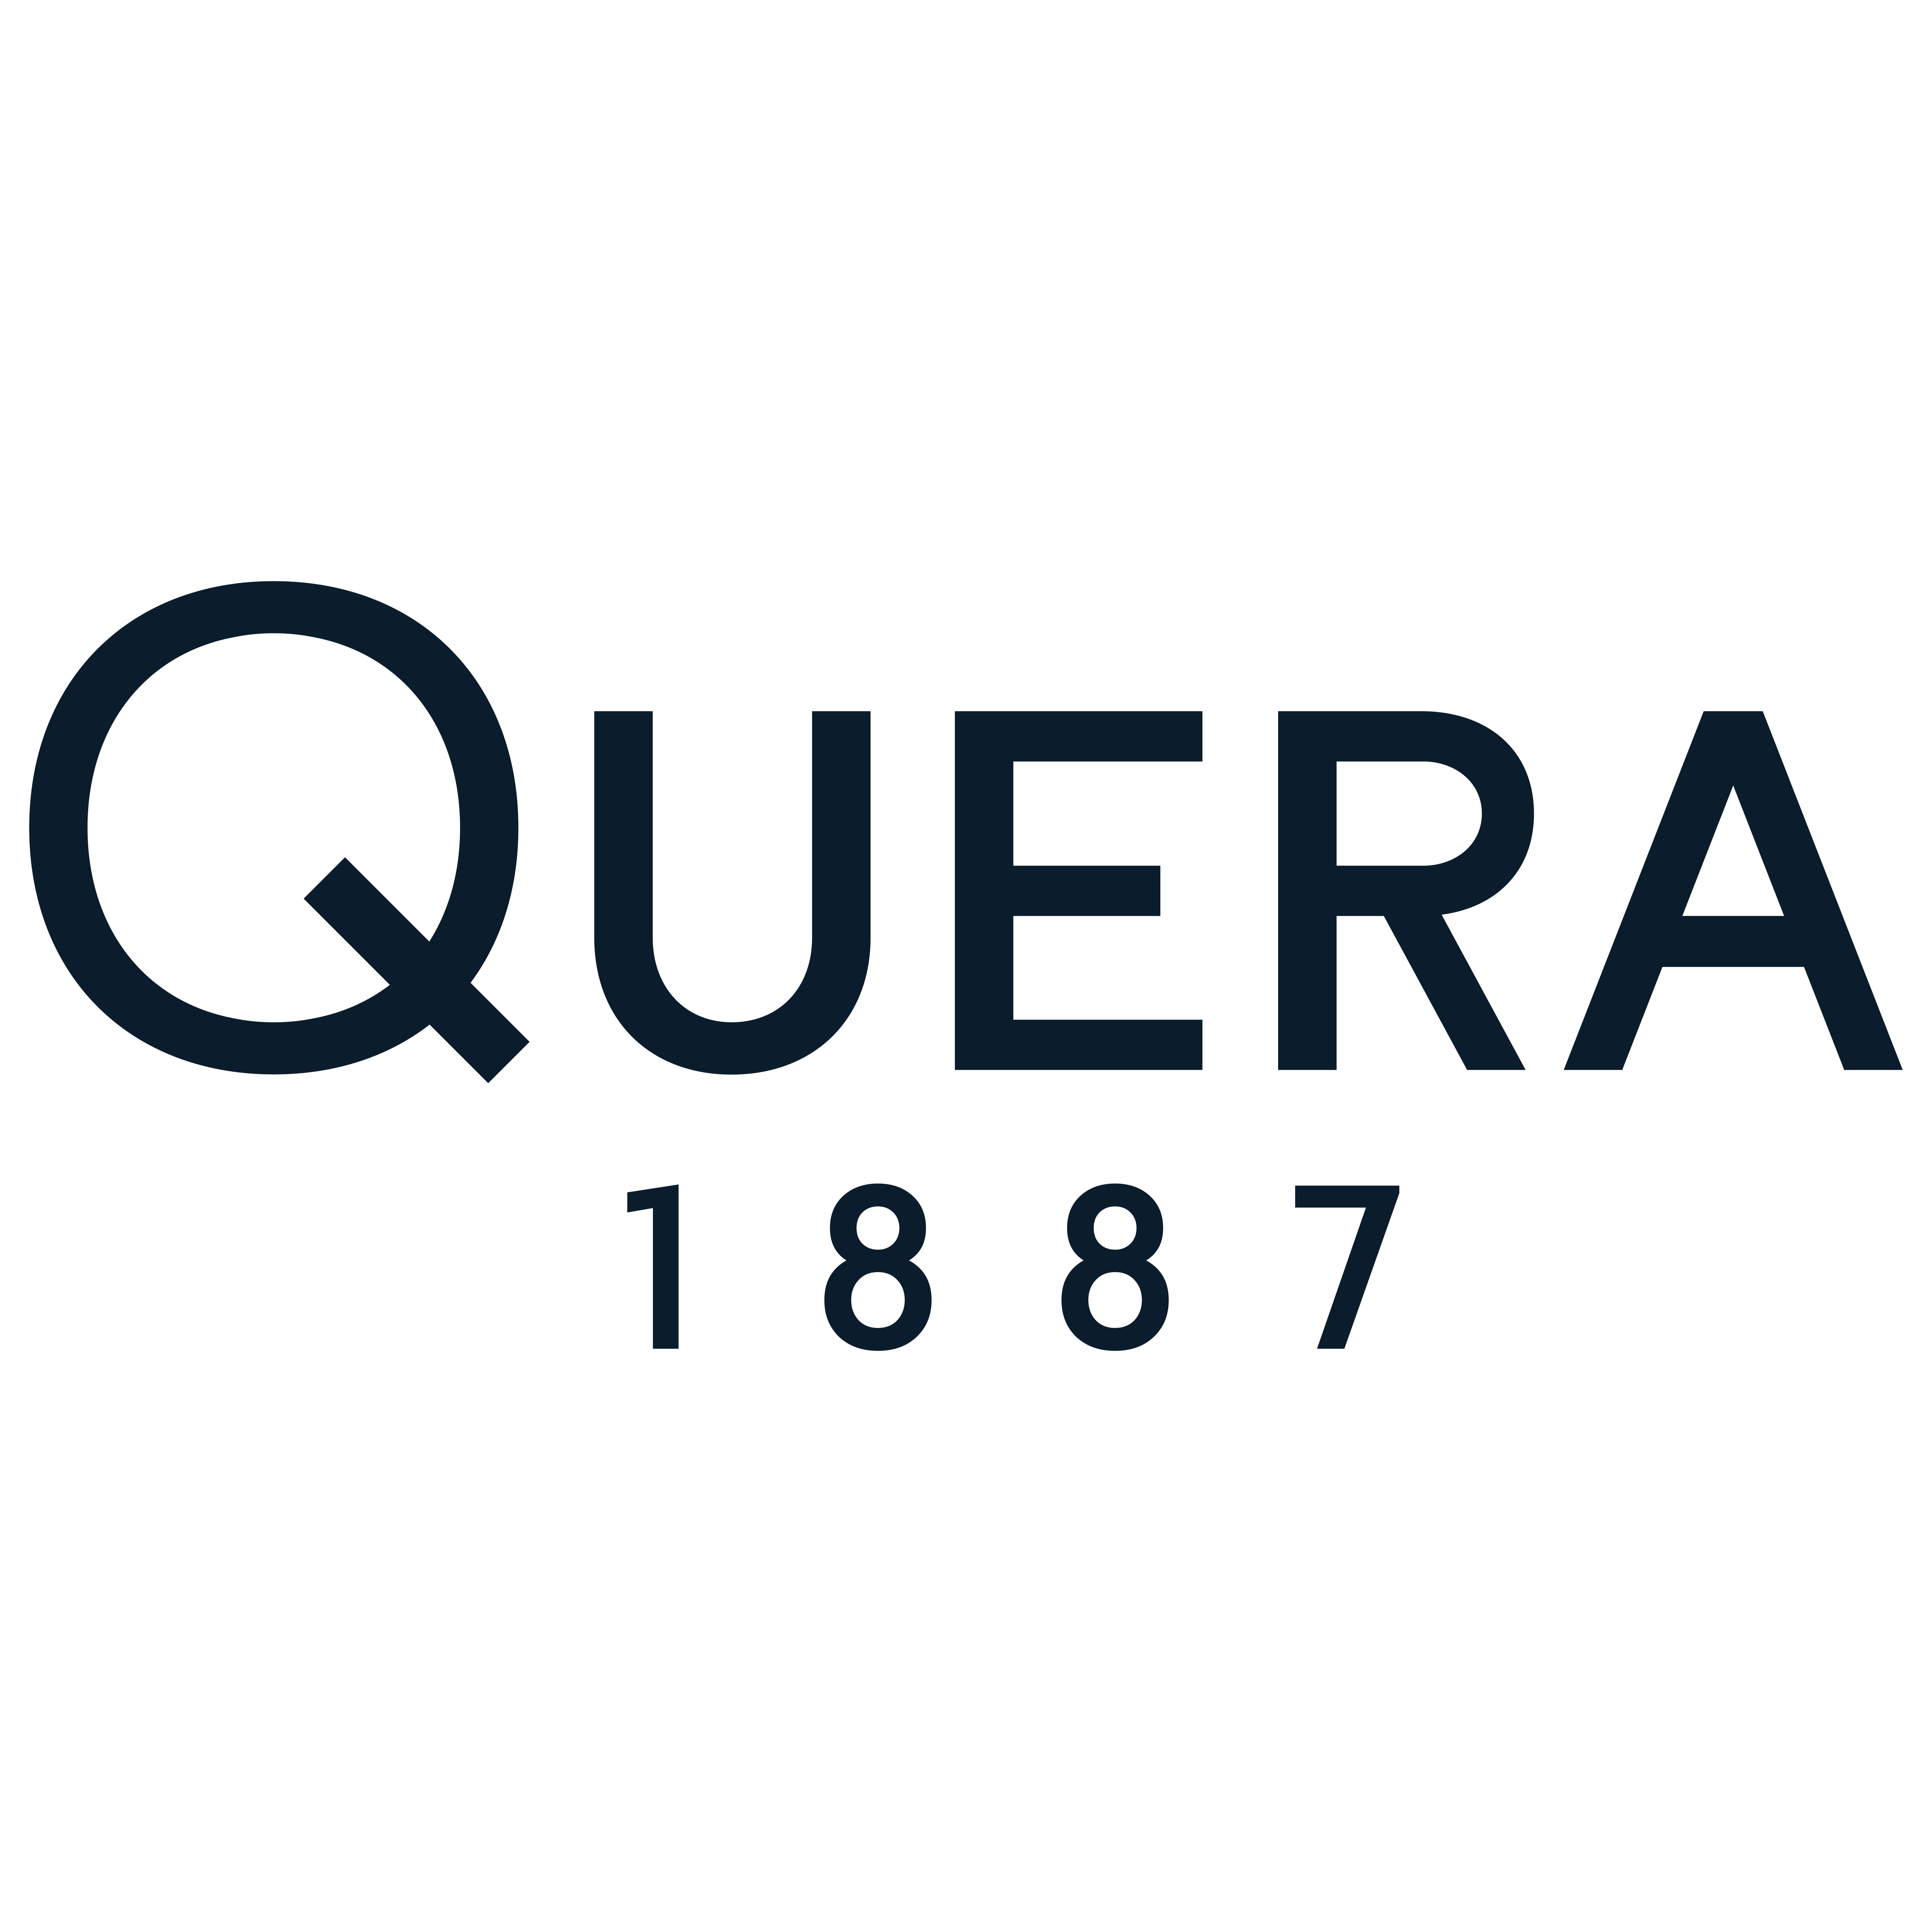 QUERA Joyería Alicante - Distribuidor Oficial Rolex Logo